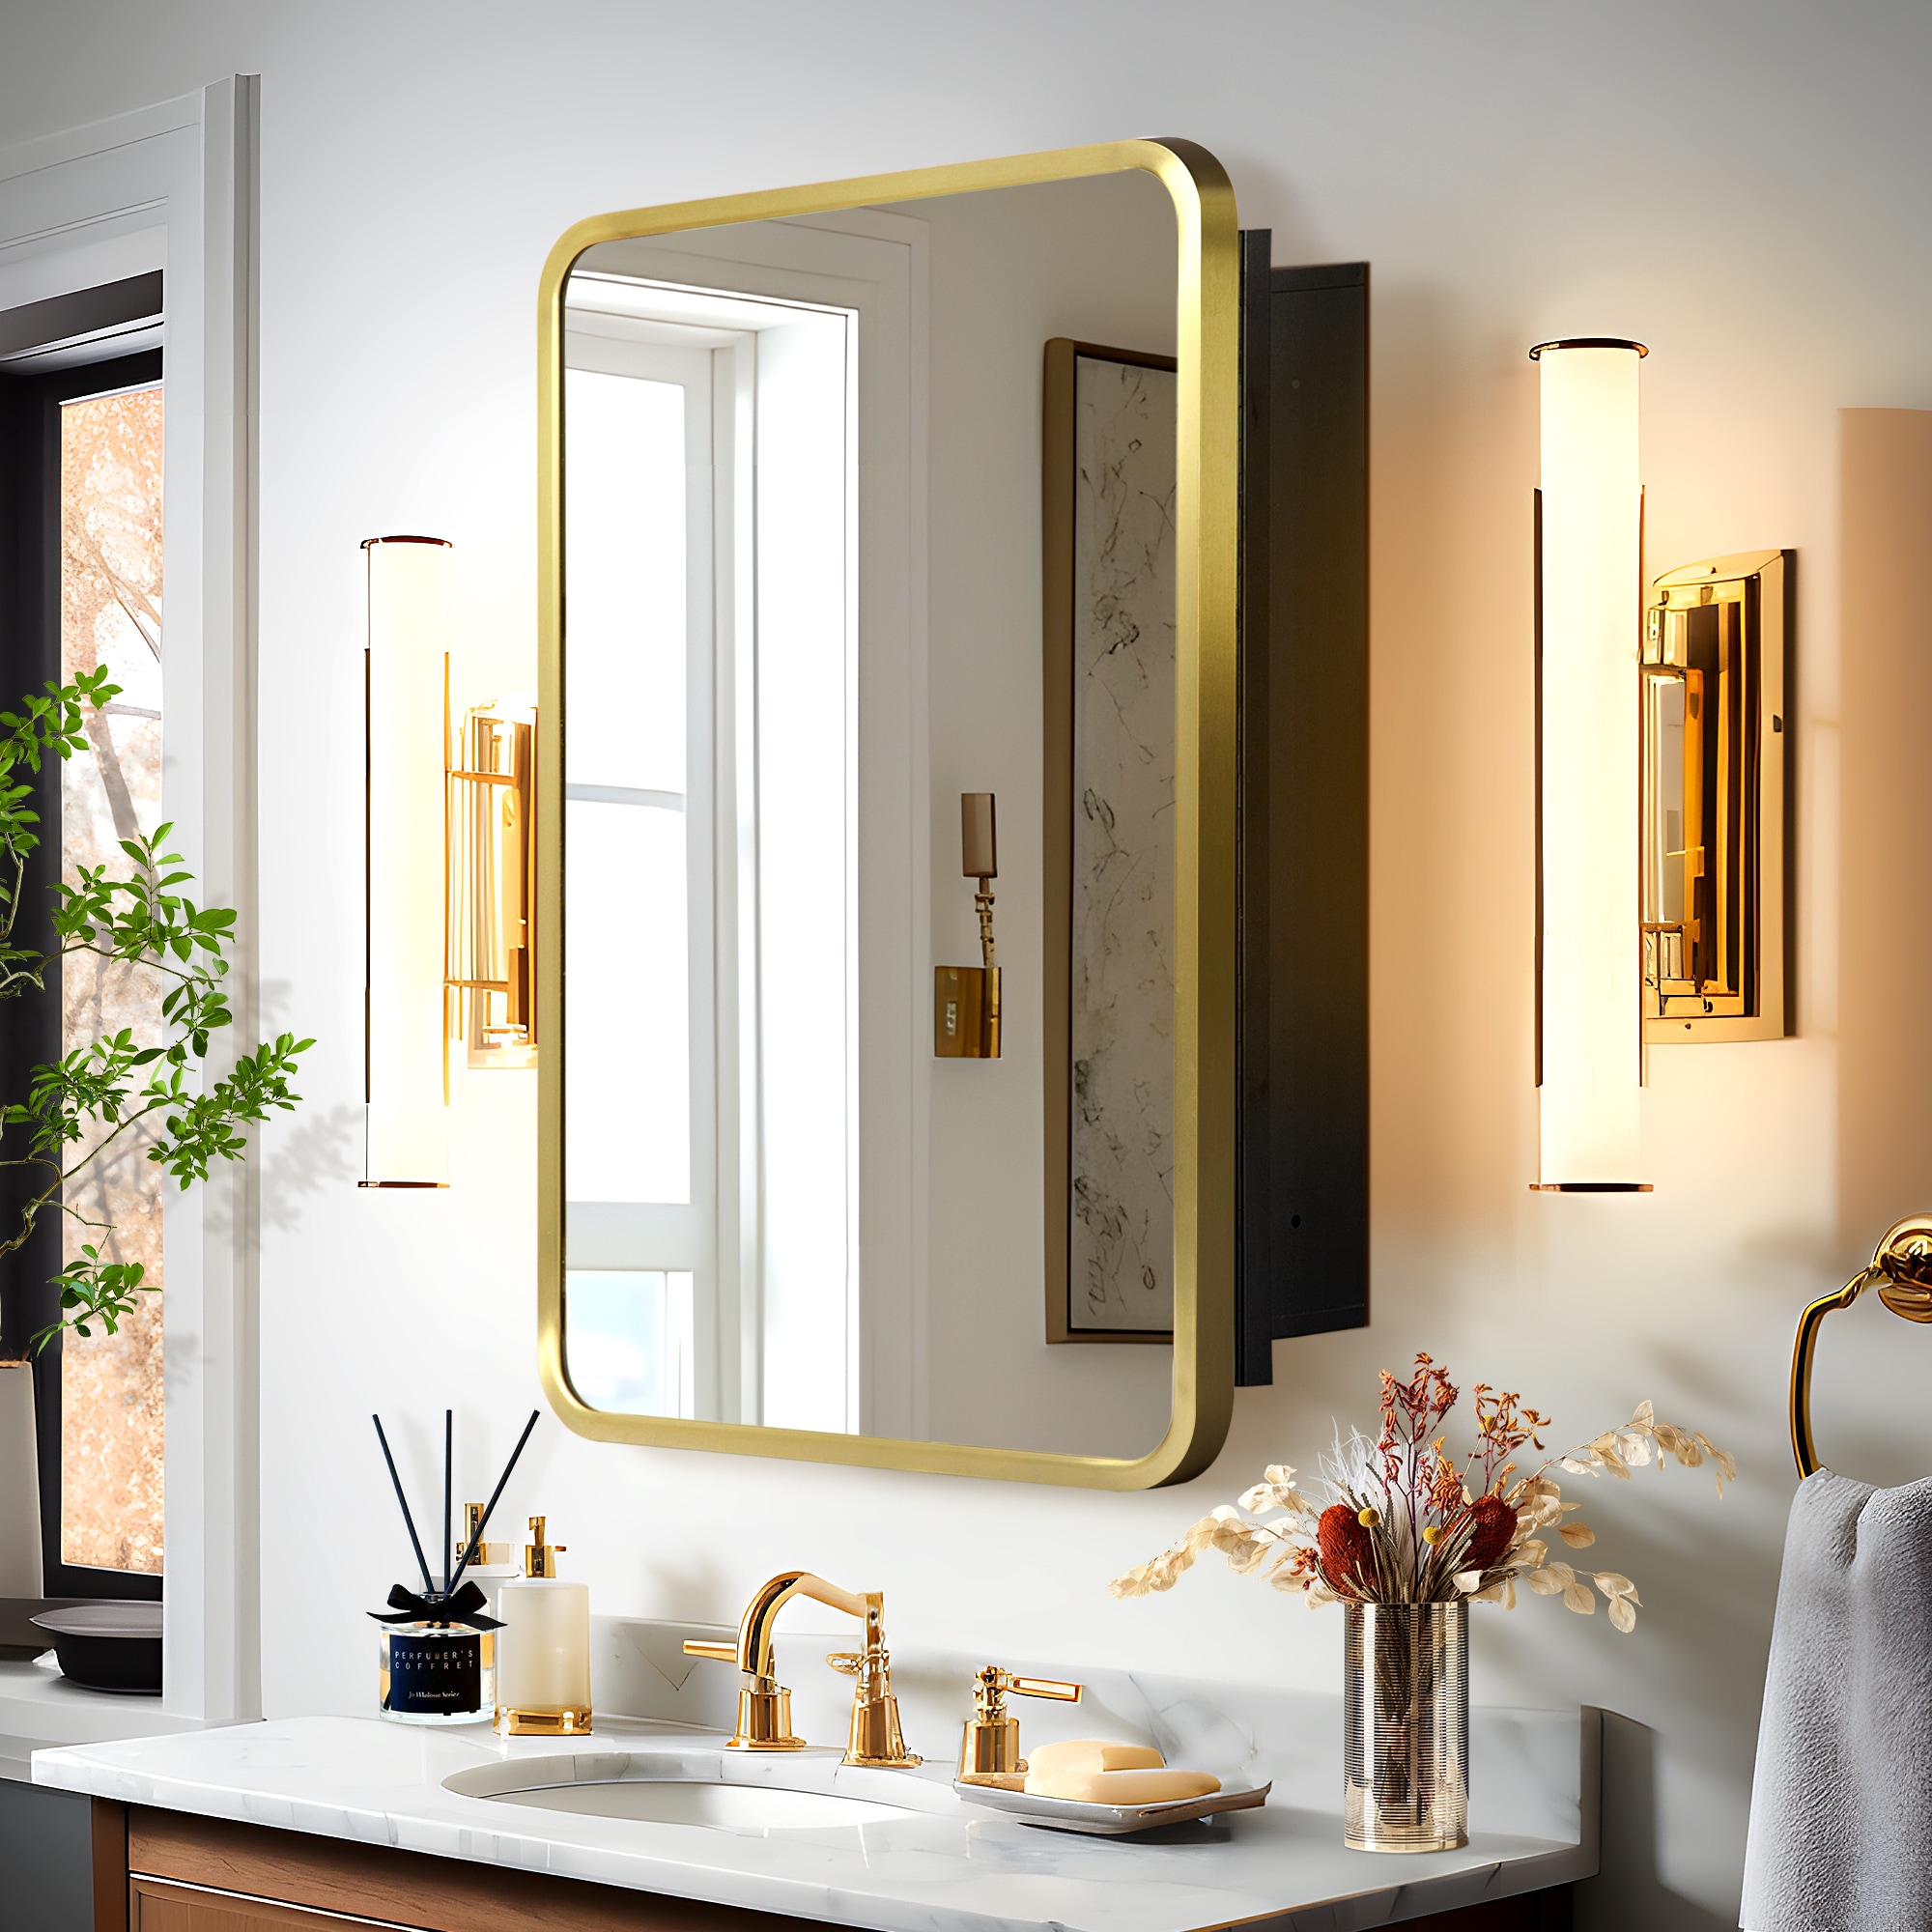 Brushed Gold Bathroom Shelf with Hooks Aluminum Rectangle Kitchen